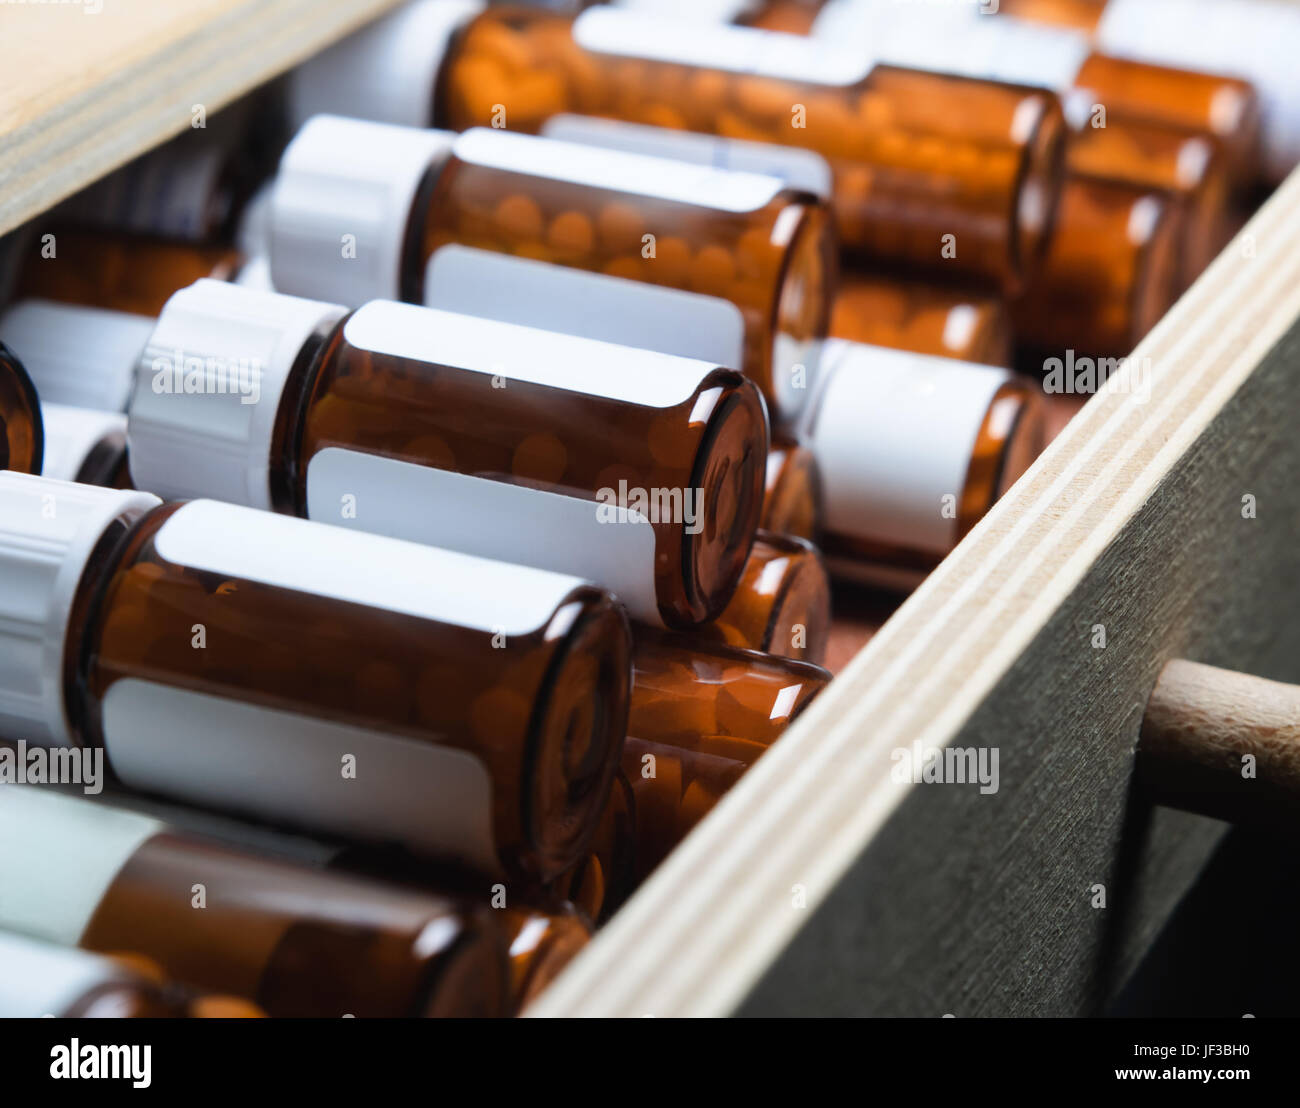 Un cassetto aperto, riempito con molti vetro ambra pillola bottiglie contenenti i rimedi omeopatici. Orizzontale (Landscape) orientamento. Foto Stock